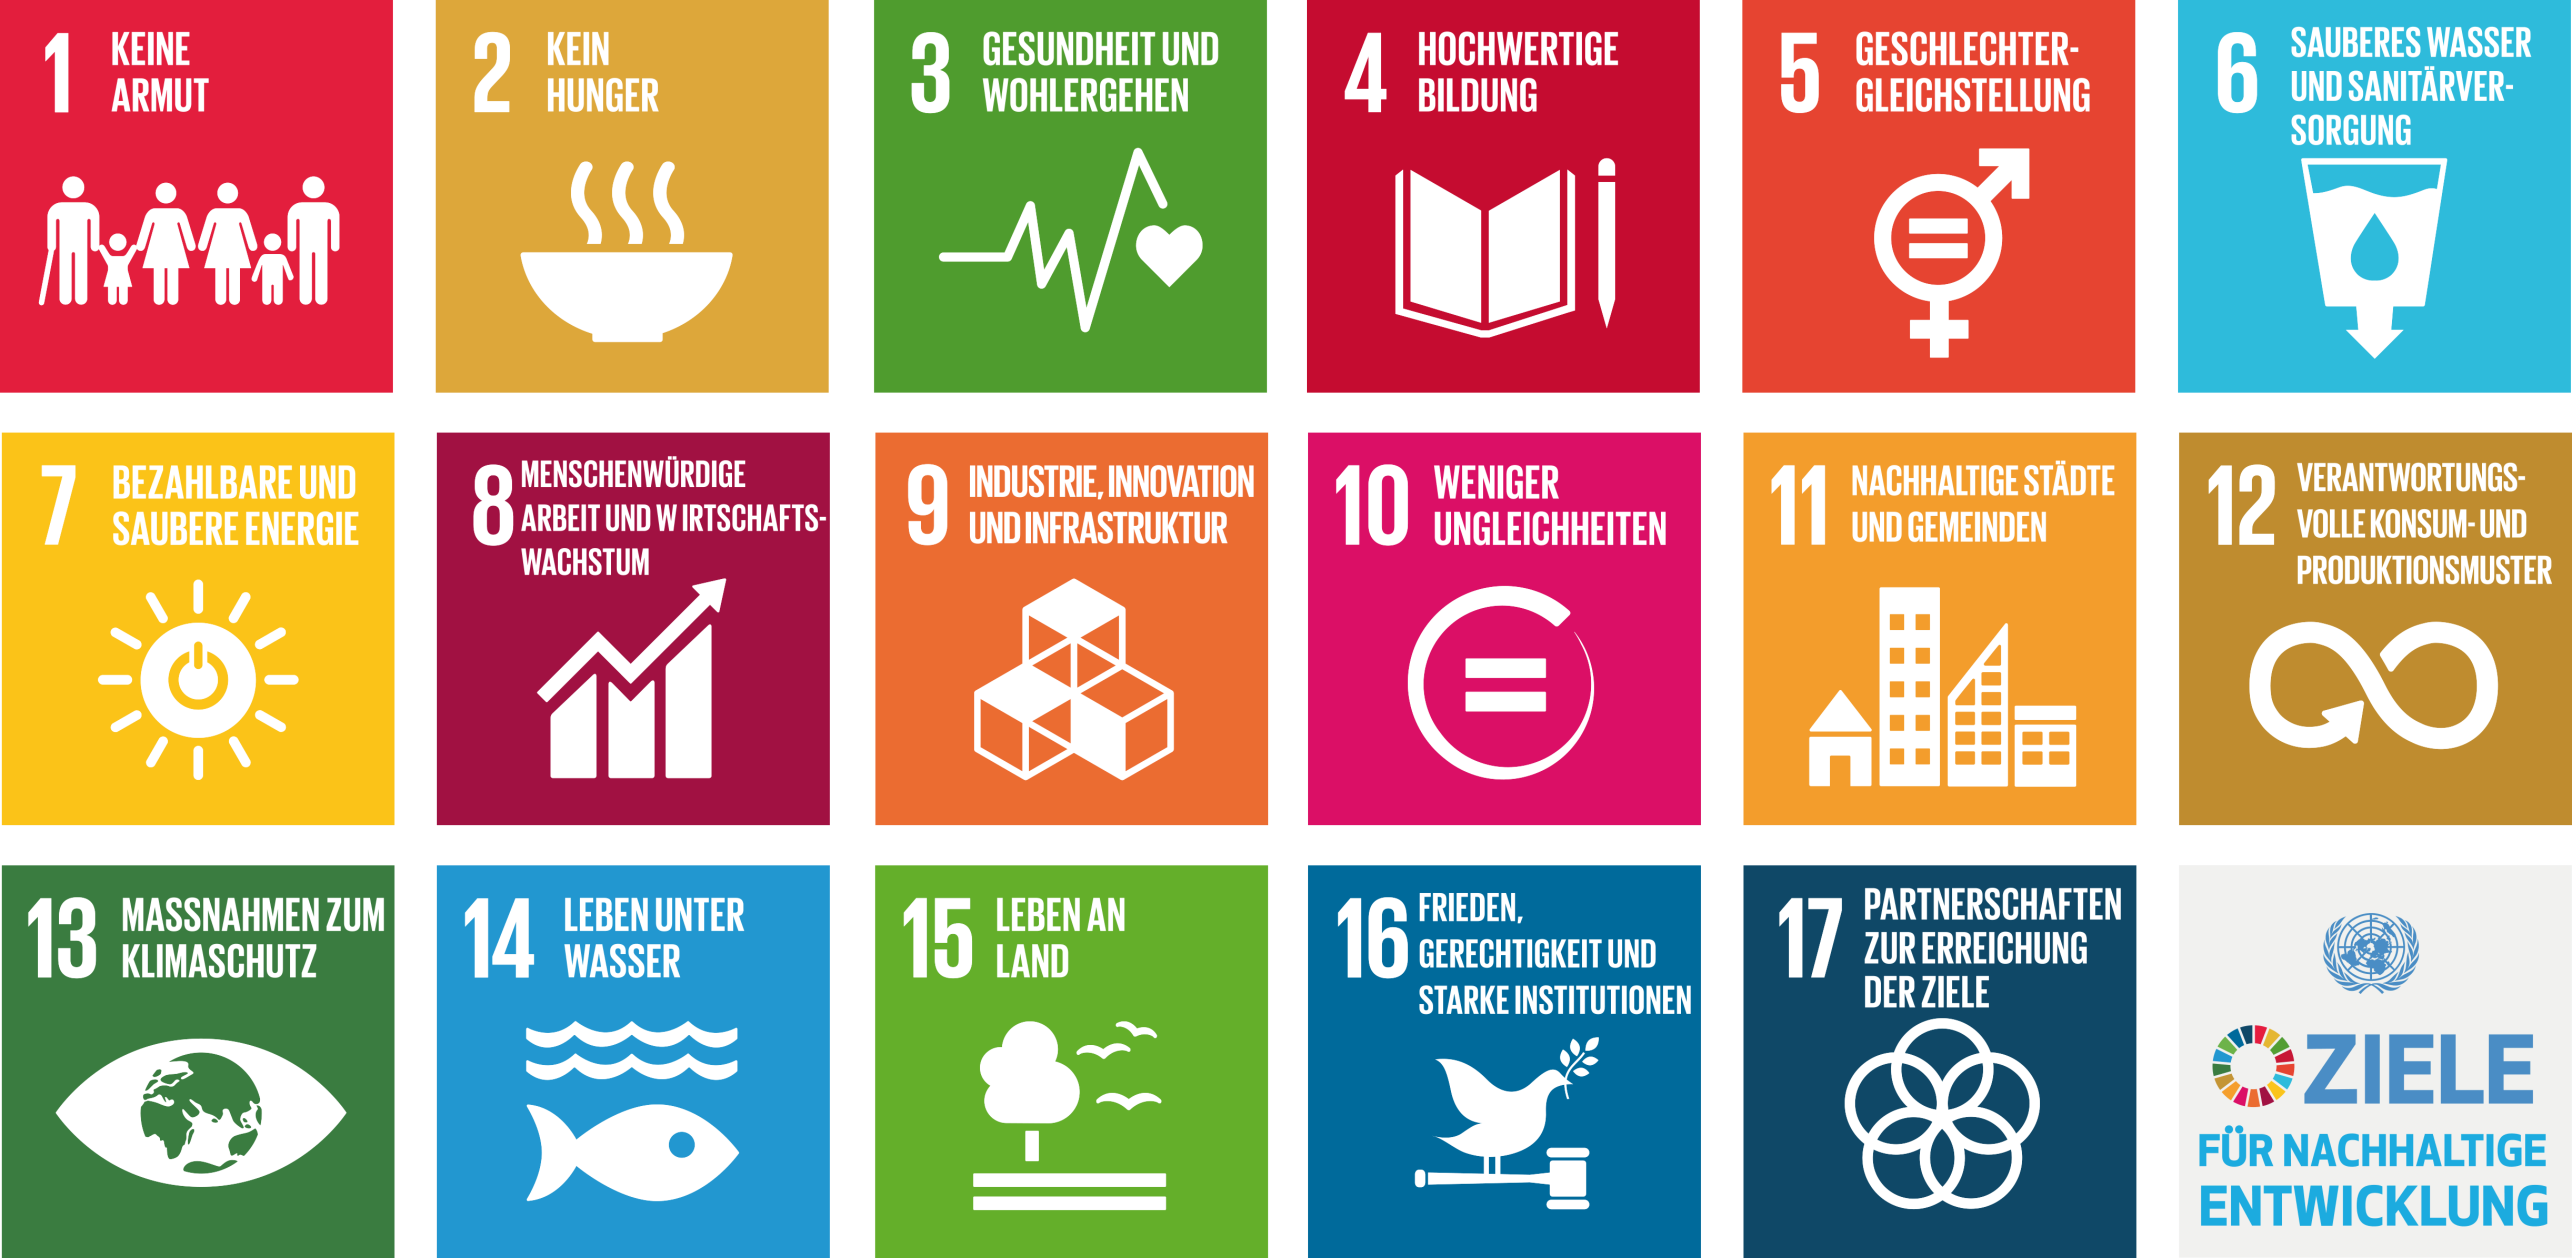 Die 17 Nachhaltigen Entwicklungsziele, die 2015 von allen UN-Mitgliedstaaten gemeinsam beschlossen wurden.